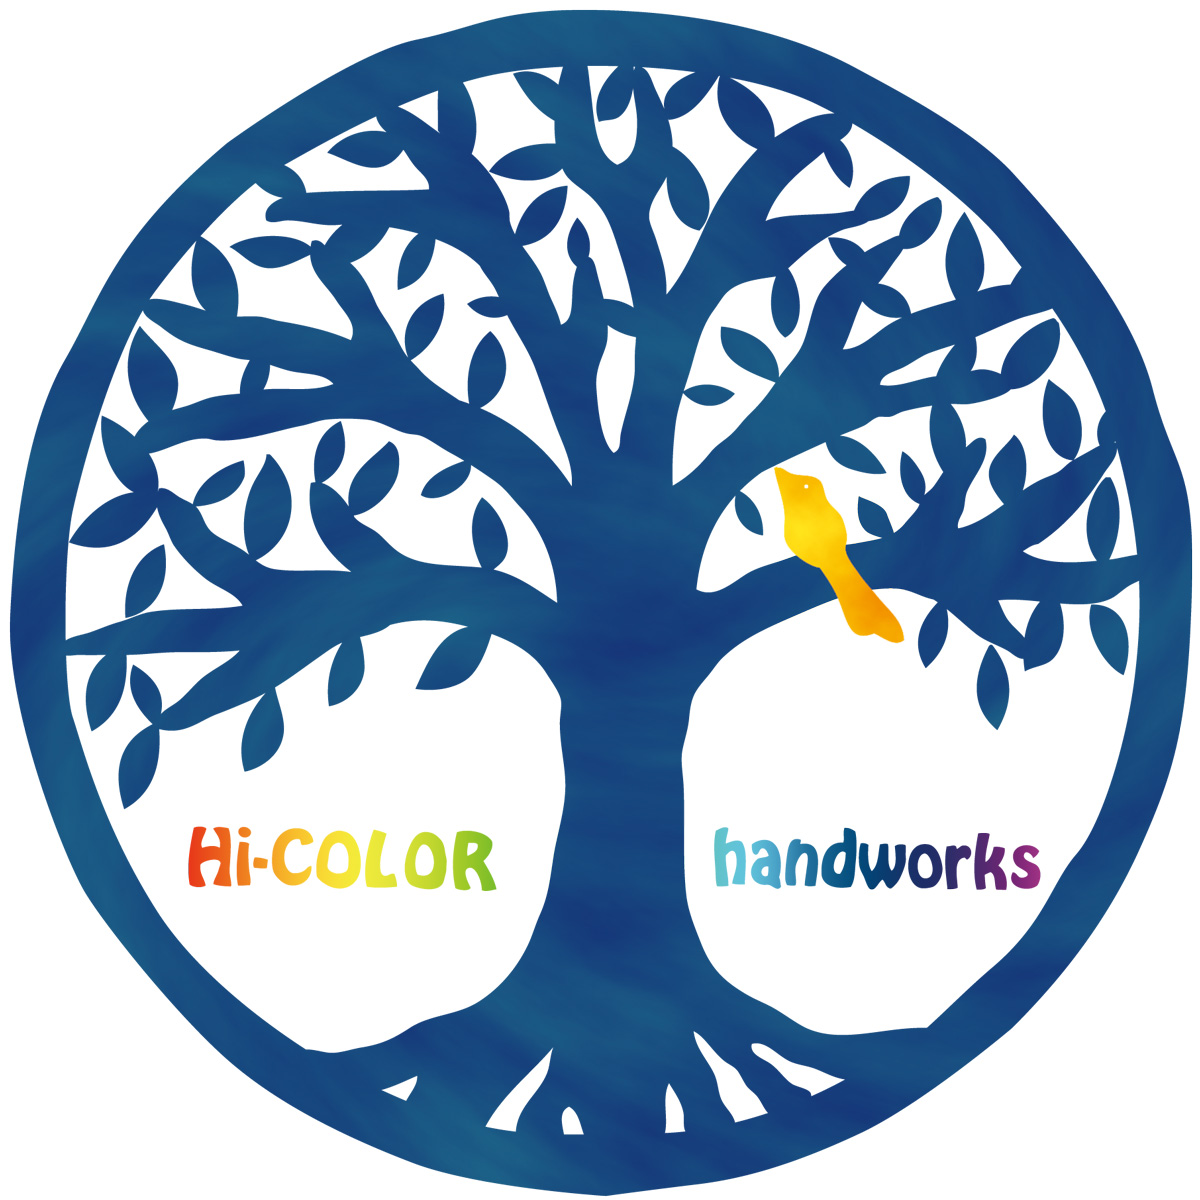 Hi-COLOR handworks